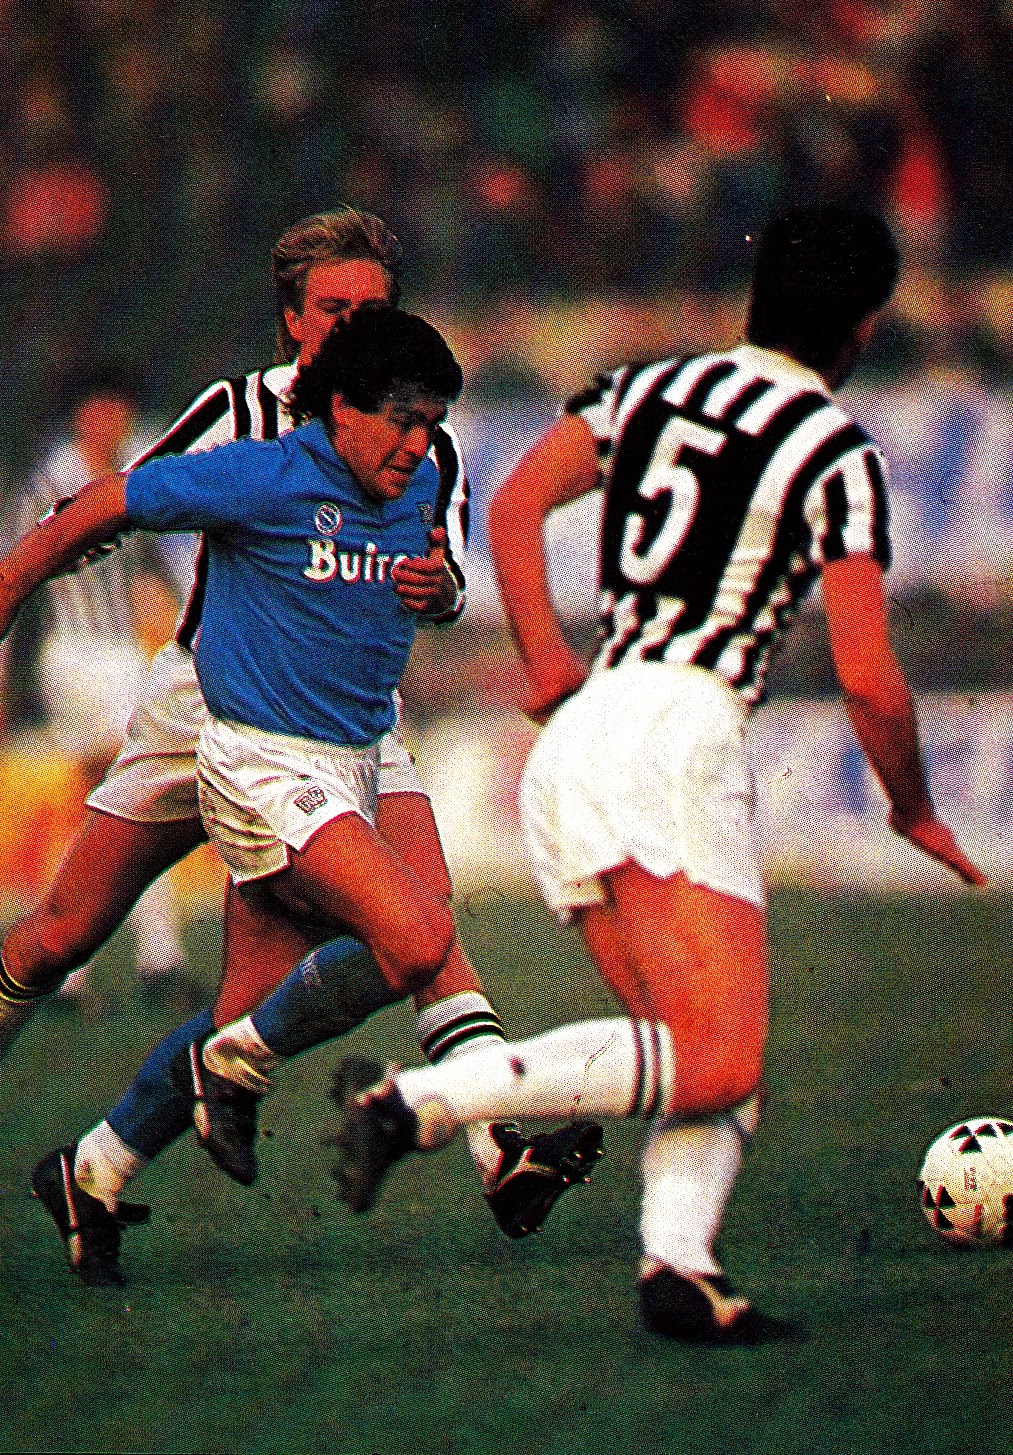 Italy 2 Brazil 0 in June 1973 in Rome. Rivelino has Tarcisio